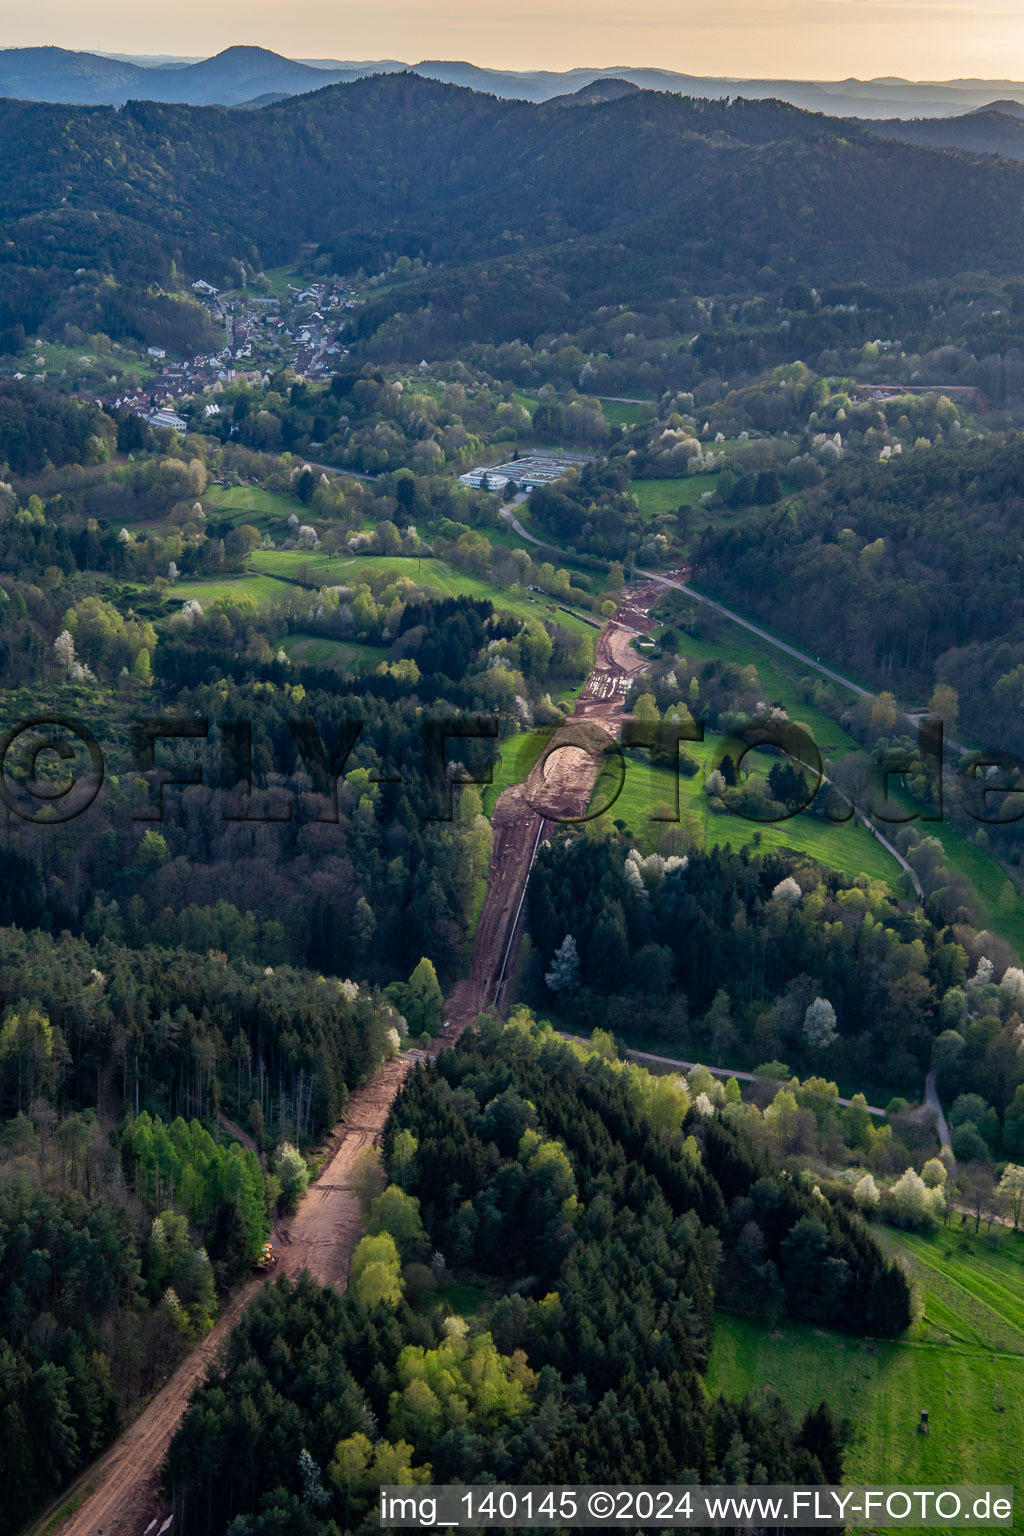 Luftbild von Schneise durch den Pfälzerwald zur Neuerrichtung des Teilstücks der Trans-Europa-Naturgas-Pipeline (TENP-III von den Niederlanden in die Schweiz) auf 51 km Länge zwischen Mittelbrunn und Klingenmünster in Schwanheim im Bundesland Rheinland-Pfalz, Deutschland